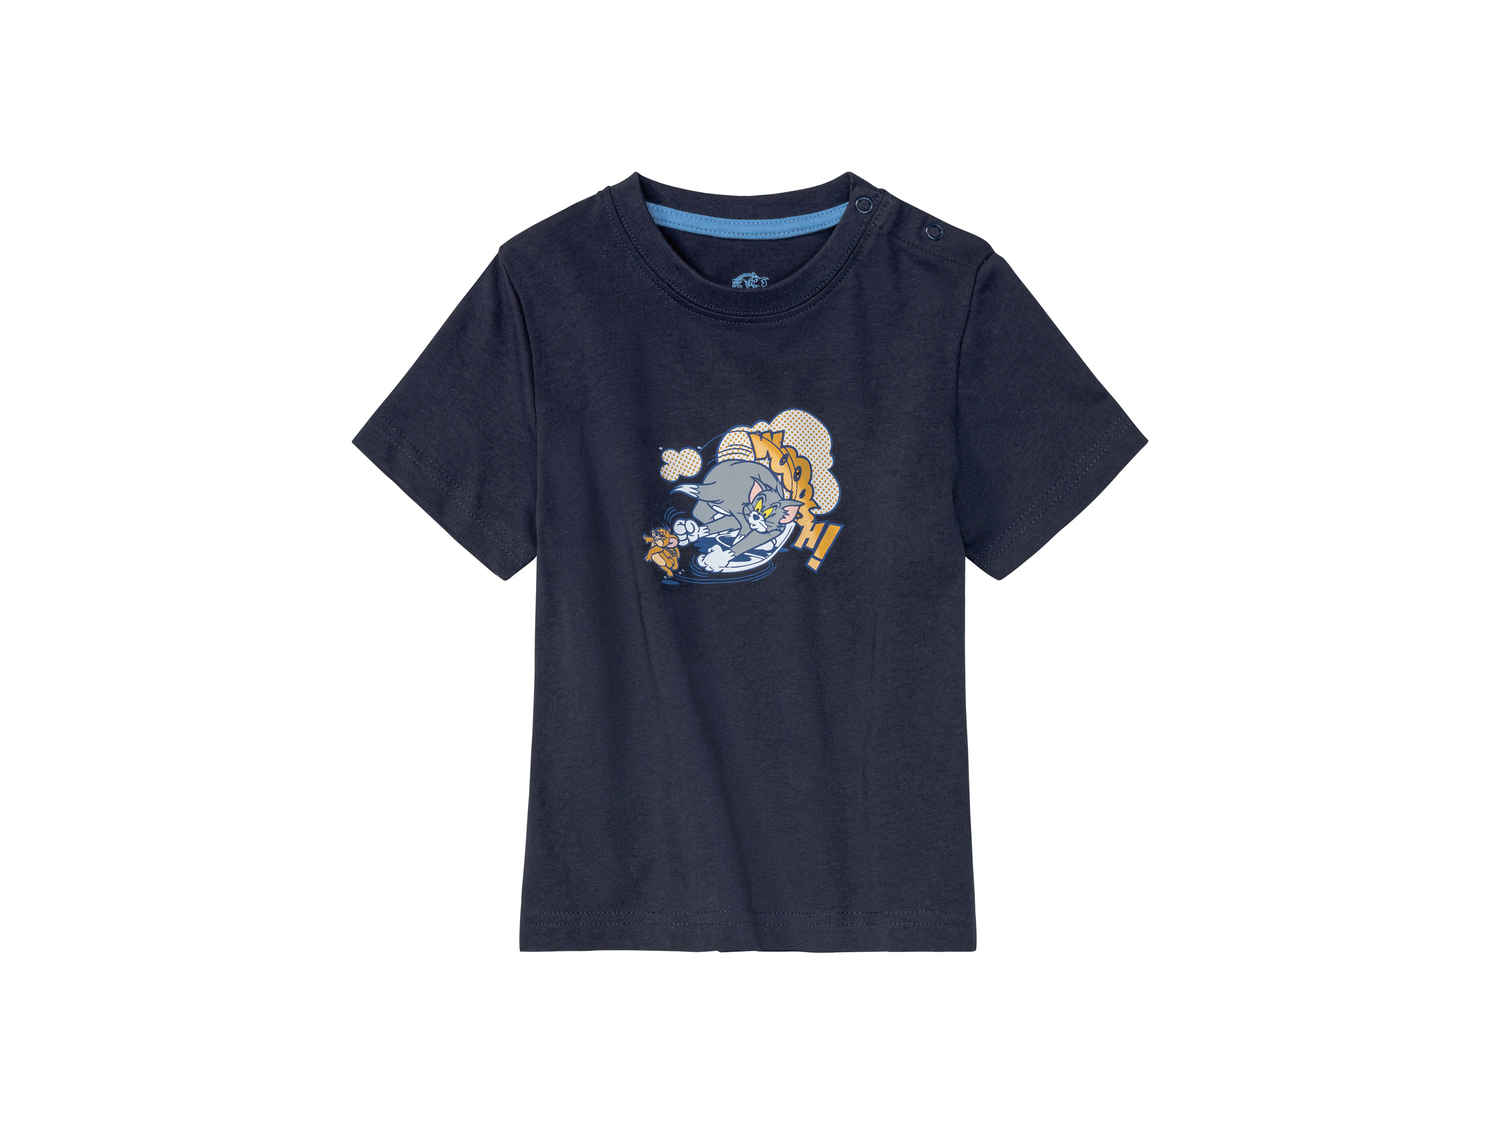 T-Shirt da bambino Tom-and-jerry, prezzo 2.99 &#8364; 
Misure: 1-6 anni 
- Puro ...